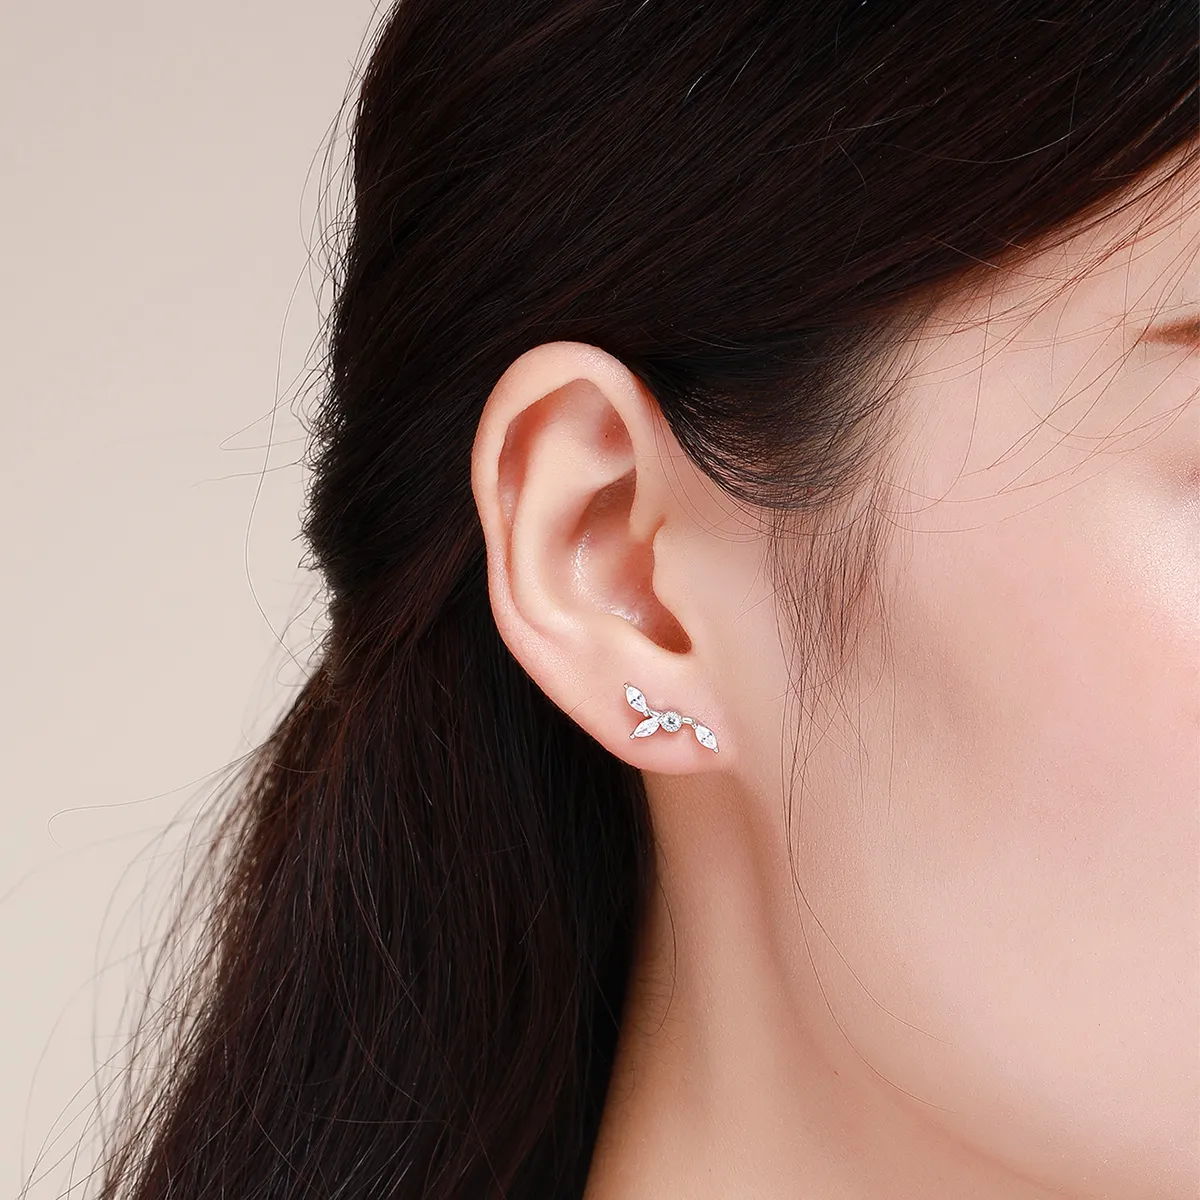 Pandora Style Silver Flower Branch Stud Earrings - SCE429